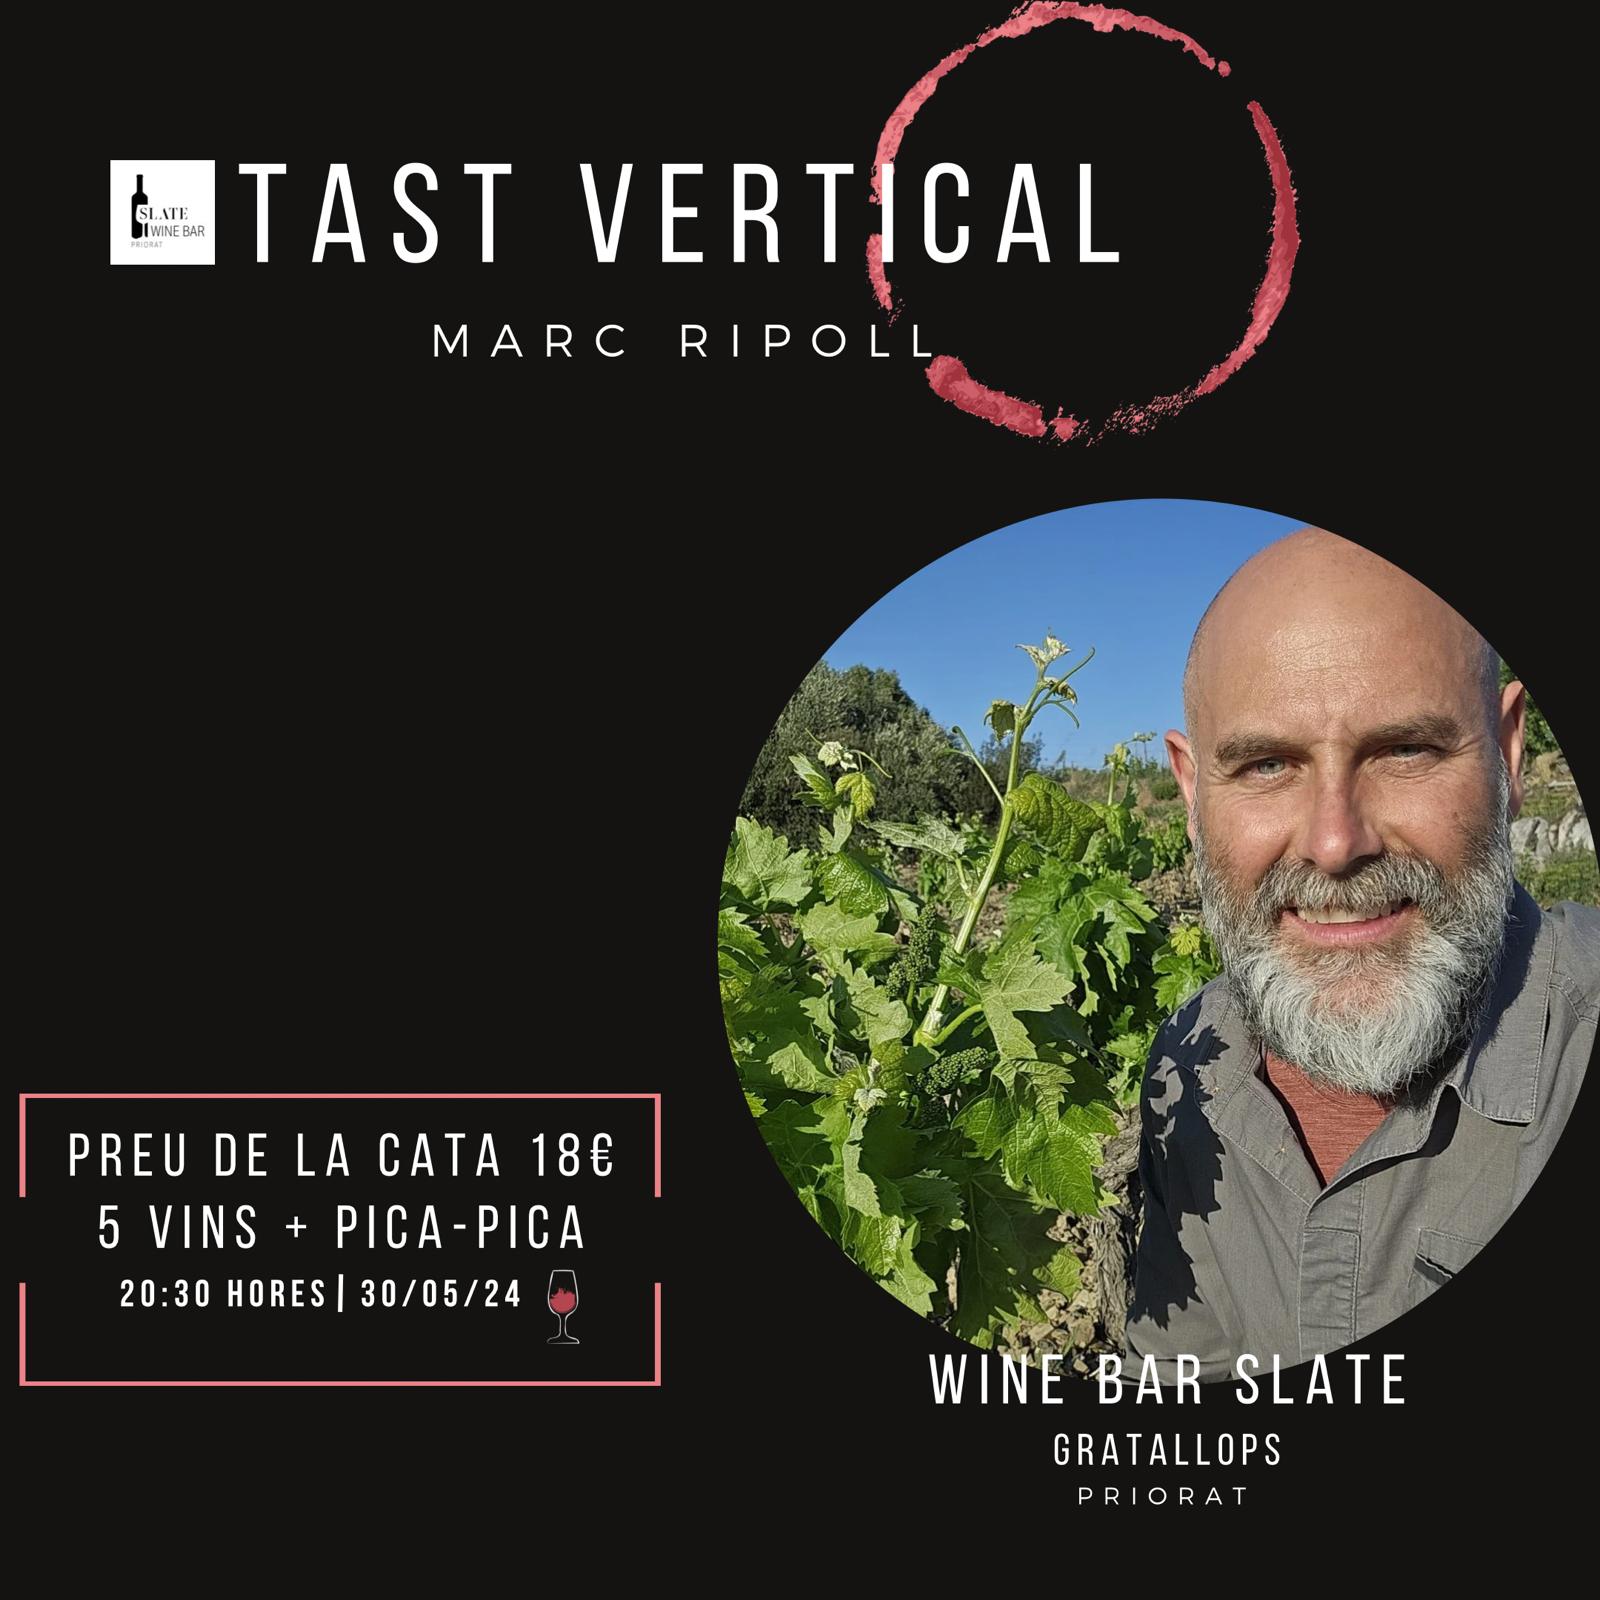 Tast vertical amb Marc Ripoll